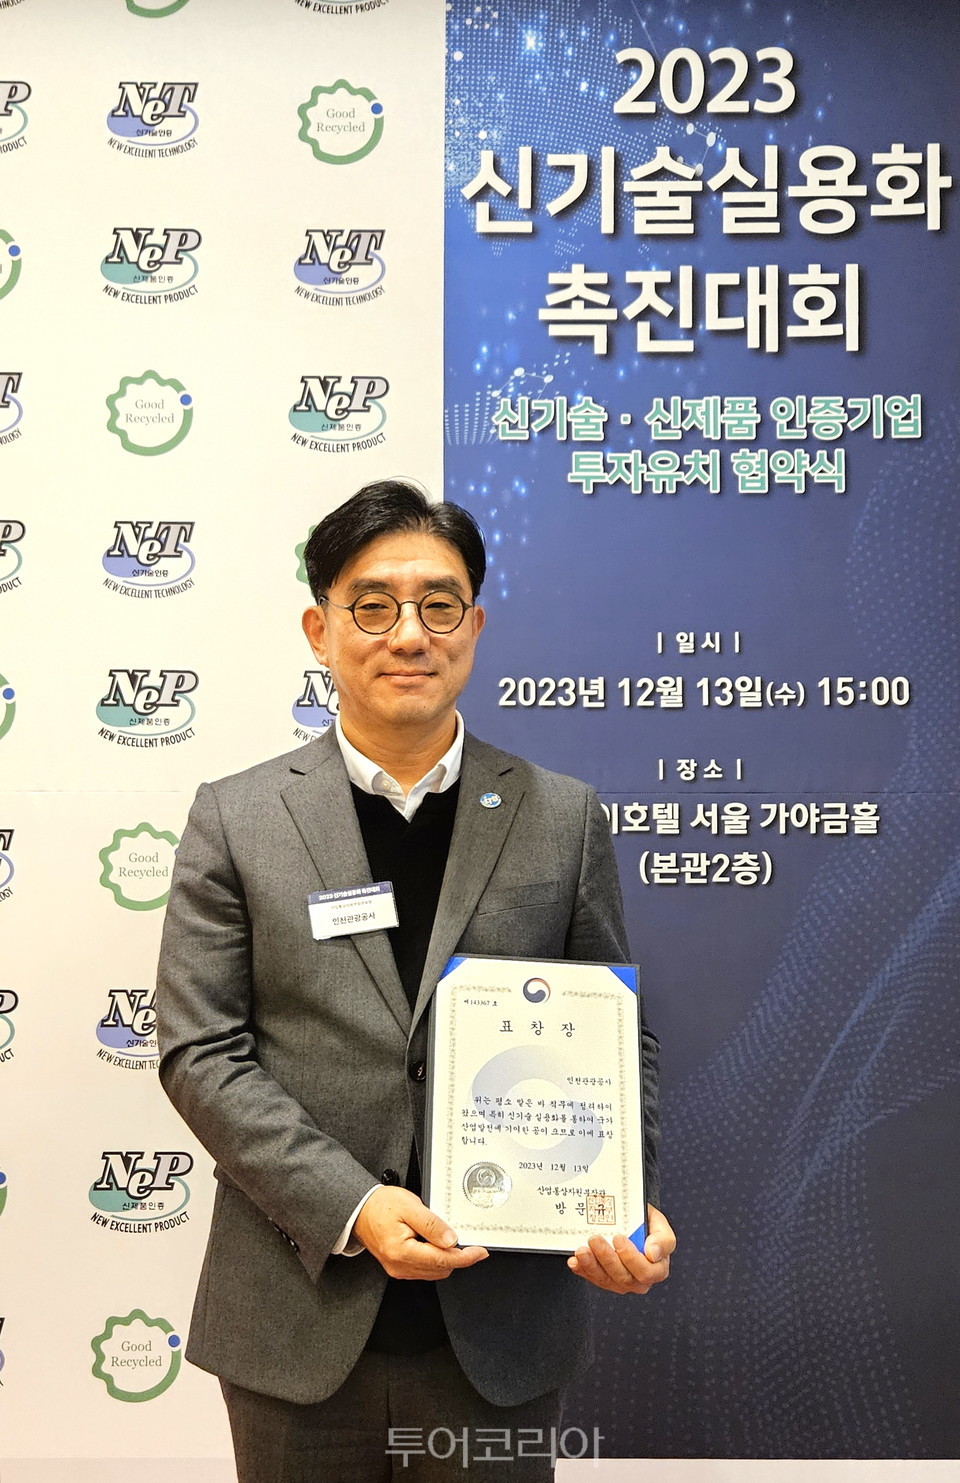 인천관광공사 2023 신기술실용화 촉진대회 시상식 산업부 장관 표창 수상